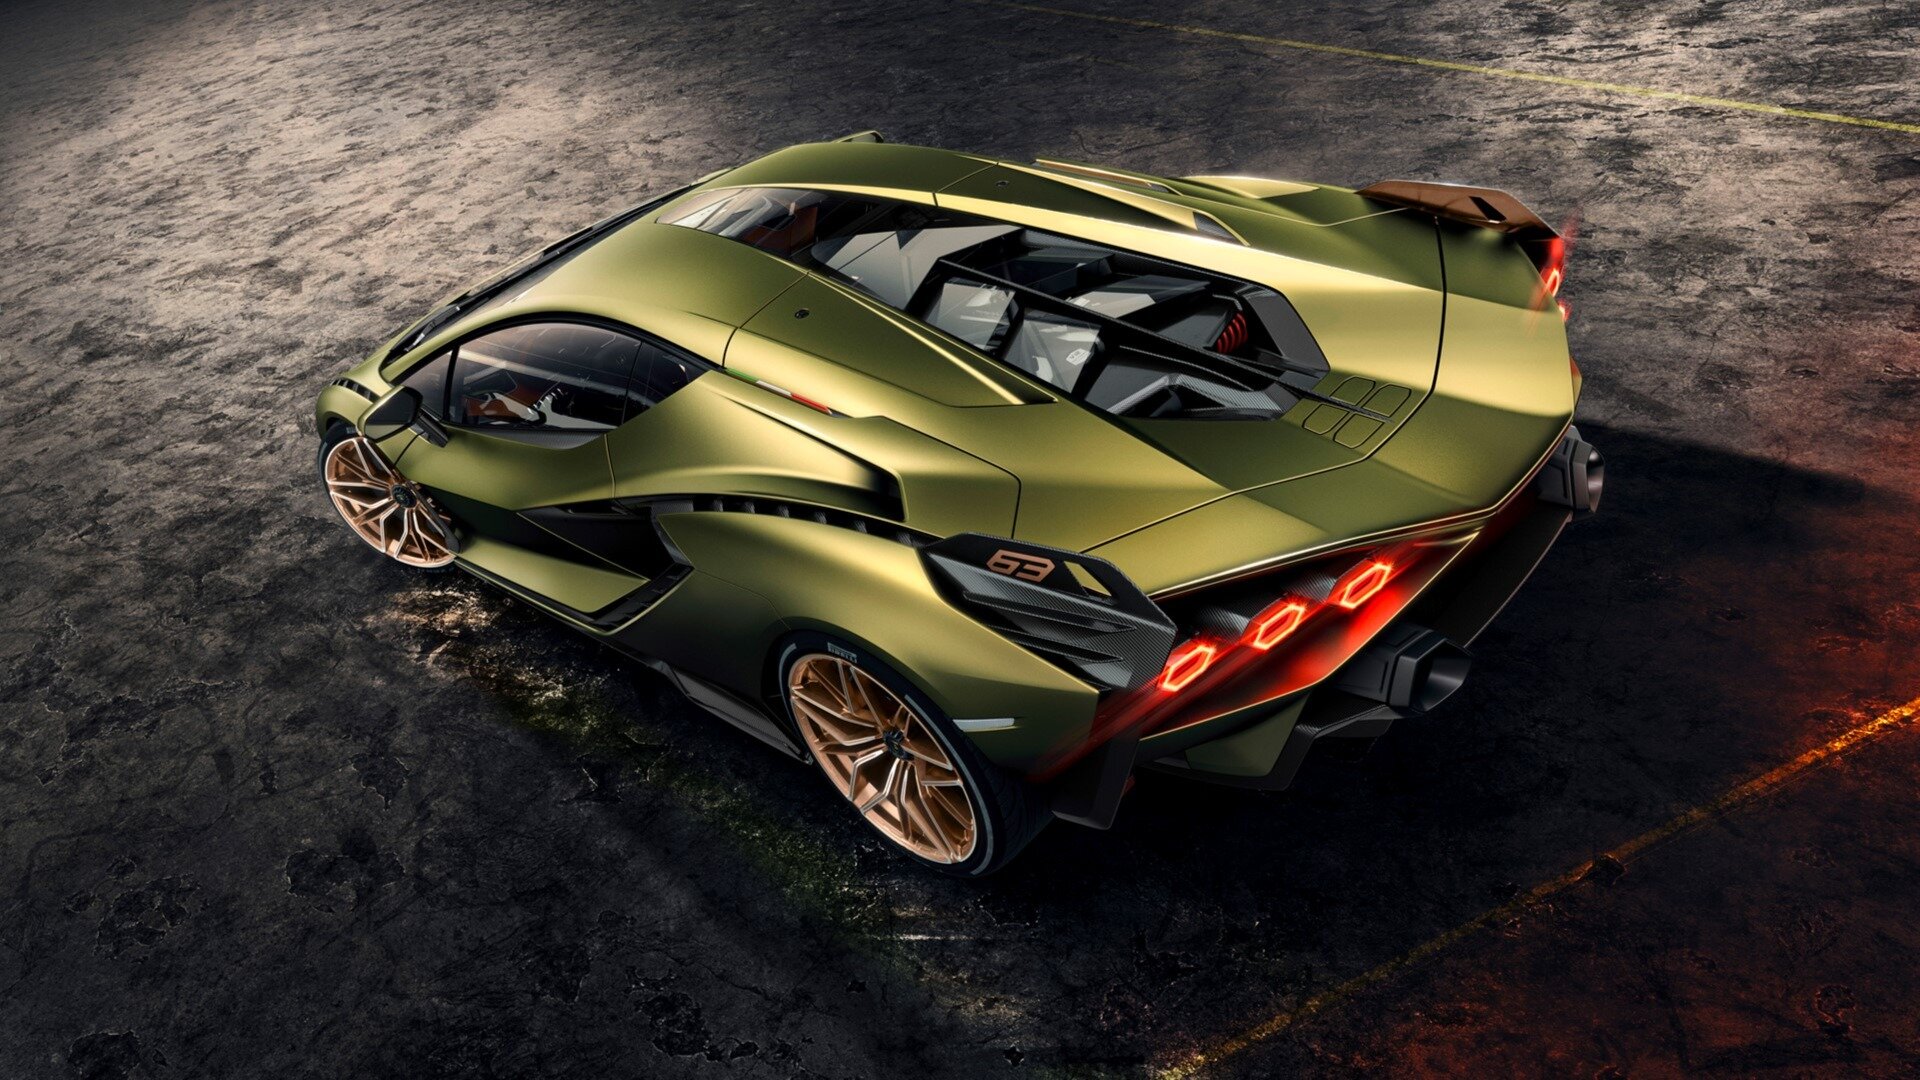 2022 год станет последним для автомобилей Lamborghini только с ДВС